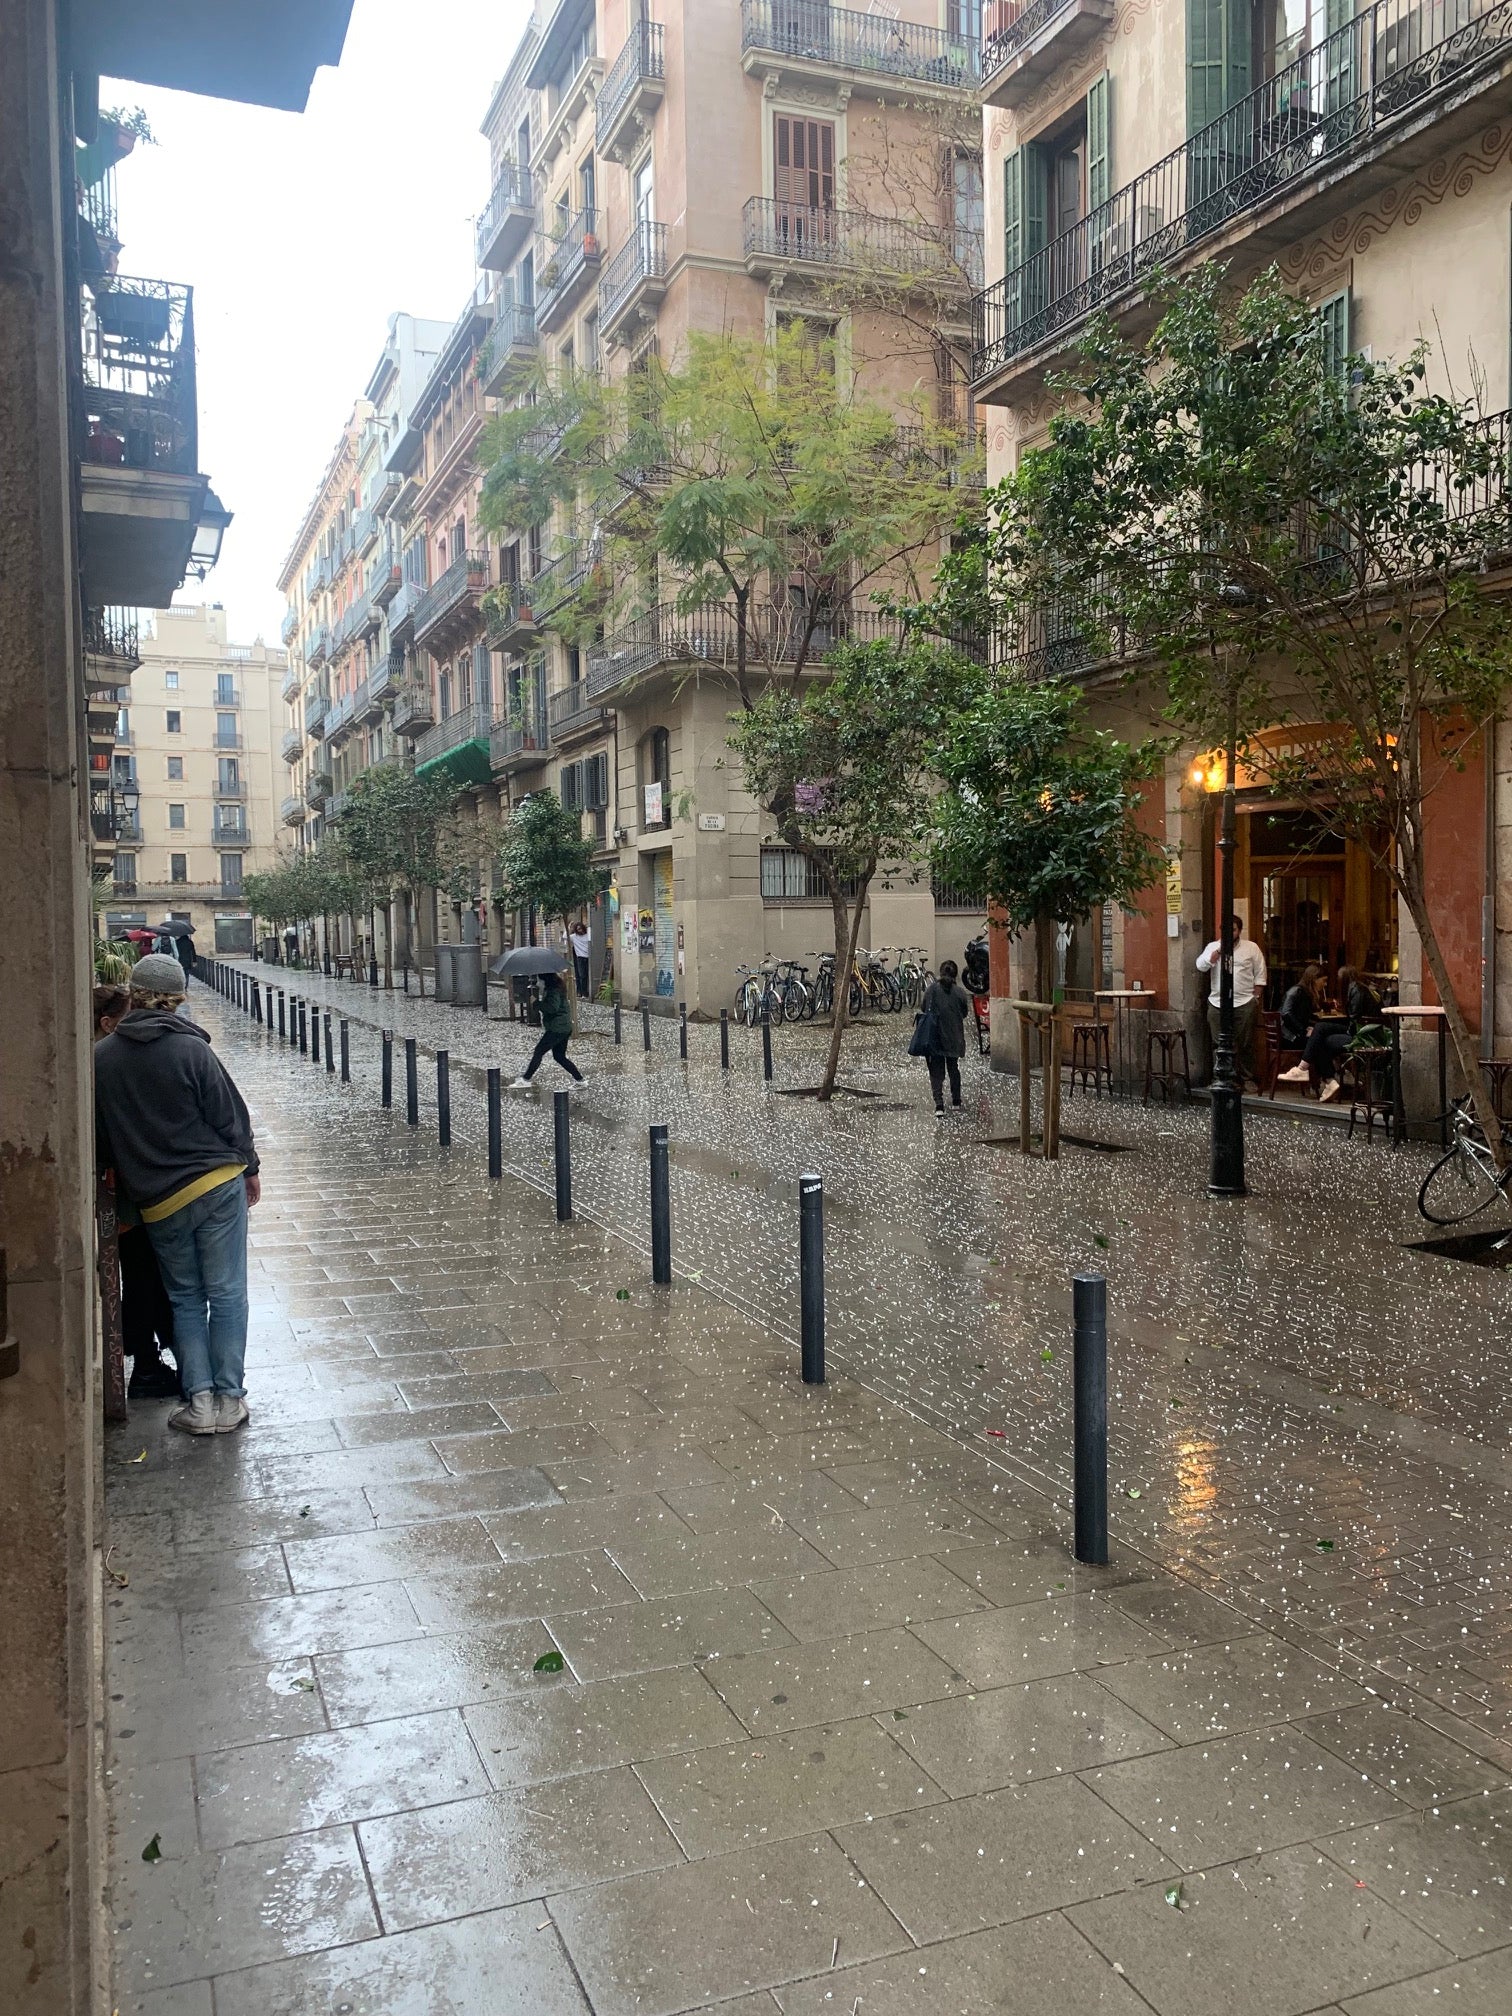 Barcelona in April, rainy day